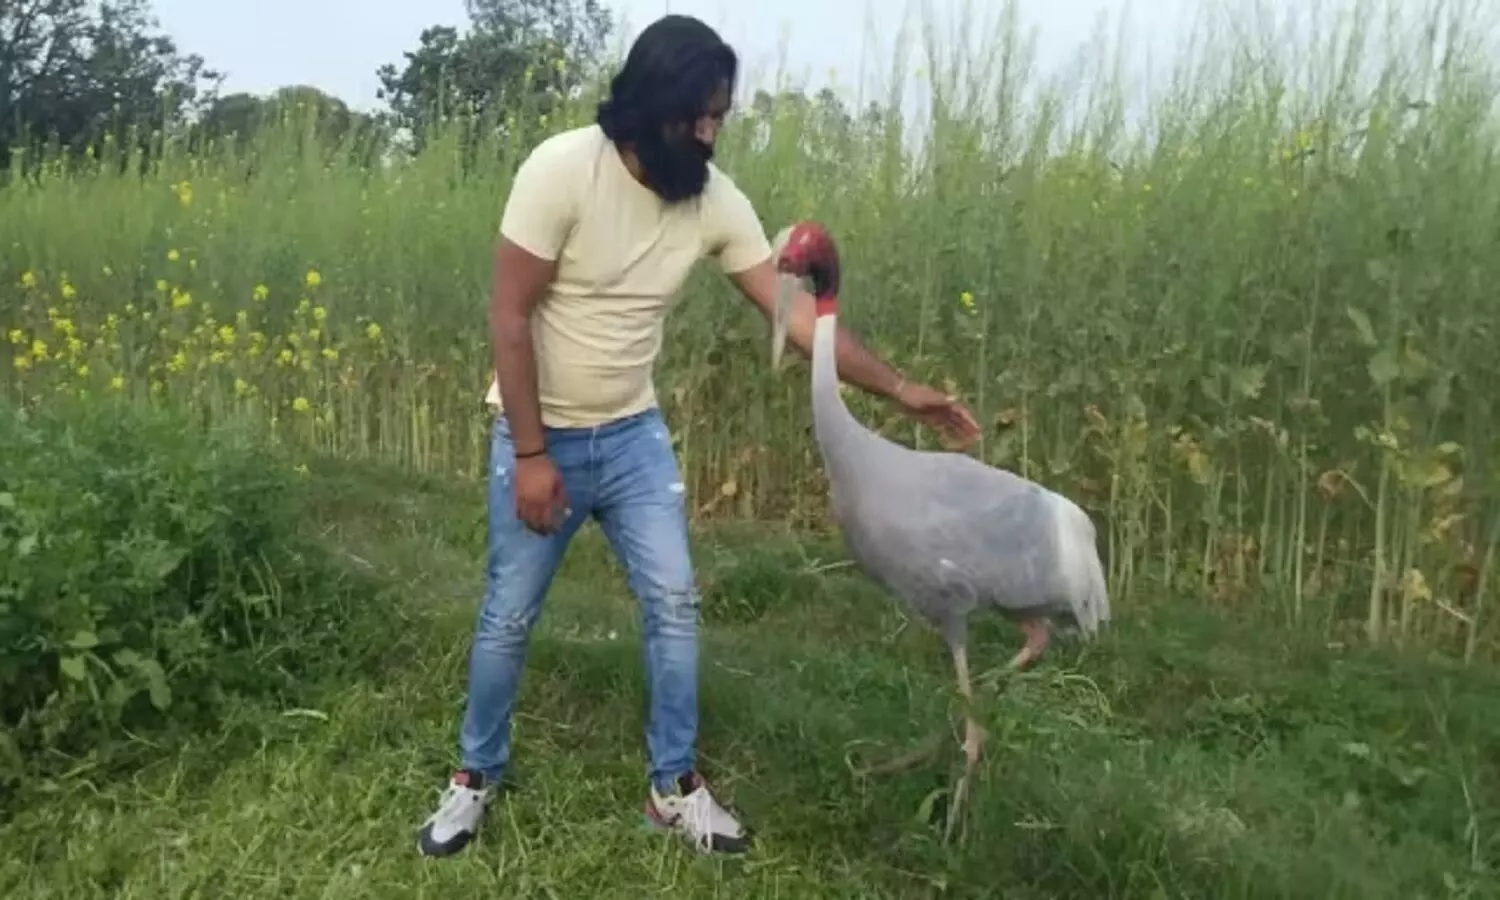 भारत में कौन से जानवर पाल सकते हैं और कौन से नहीं? क्या तोता पालना गैरकानूनी है?